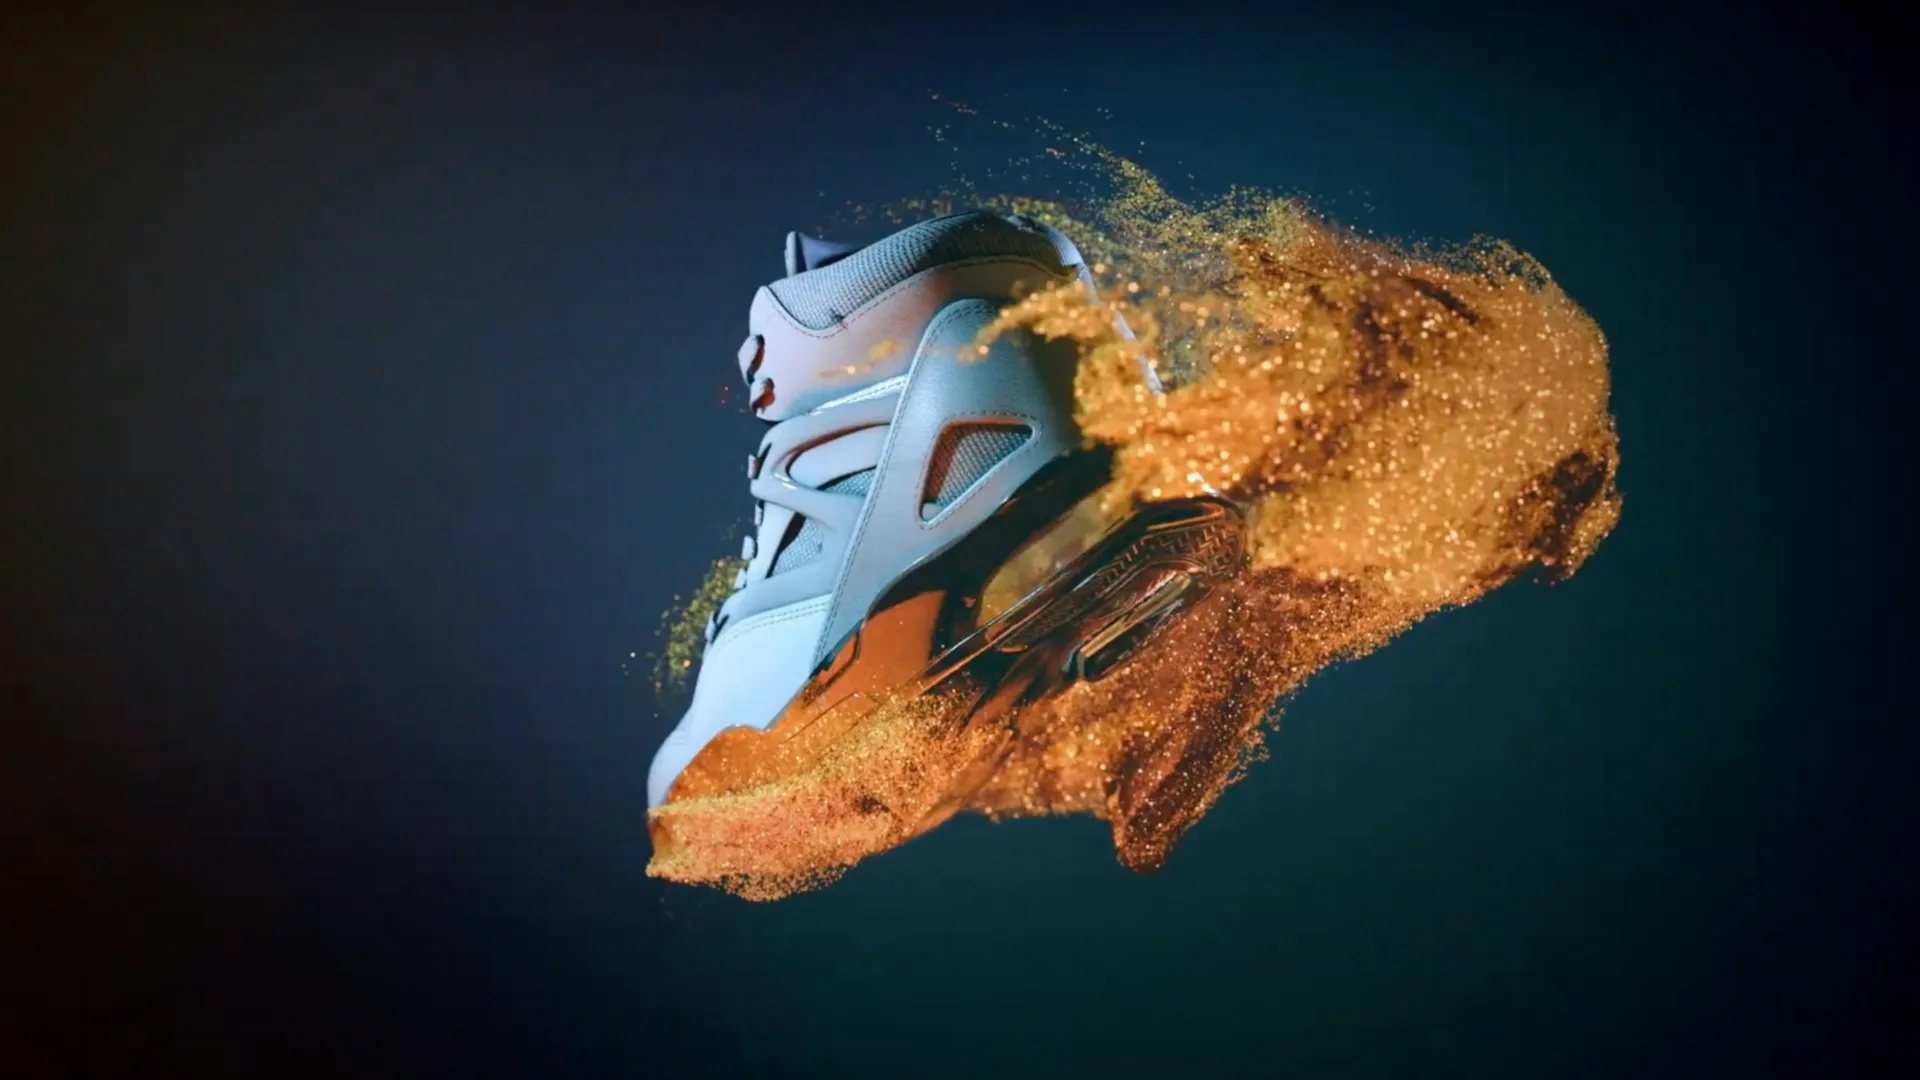 Η Reebok ακολουθεί τους ανταγωνιστές της Nike και της Adidas στο Web3 λανσάροντας τη δική της πρωτοβουλία παιχνιδιοποιημένη με τεχνητή νοημοσύνη.  Φωτογραφία: Reebok